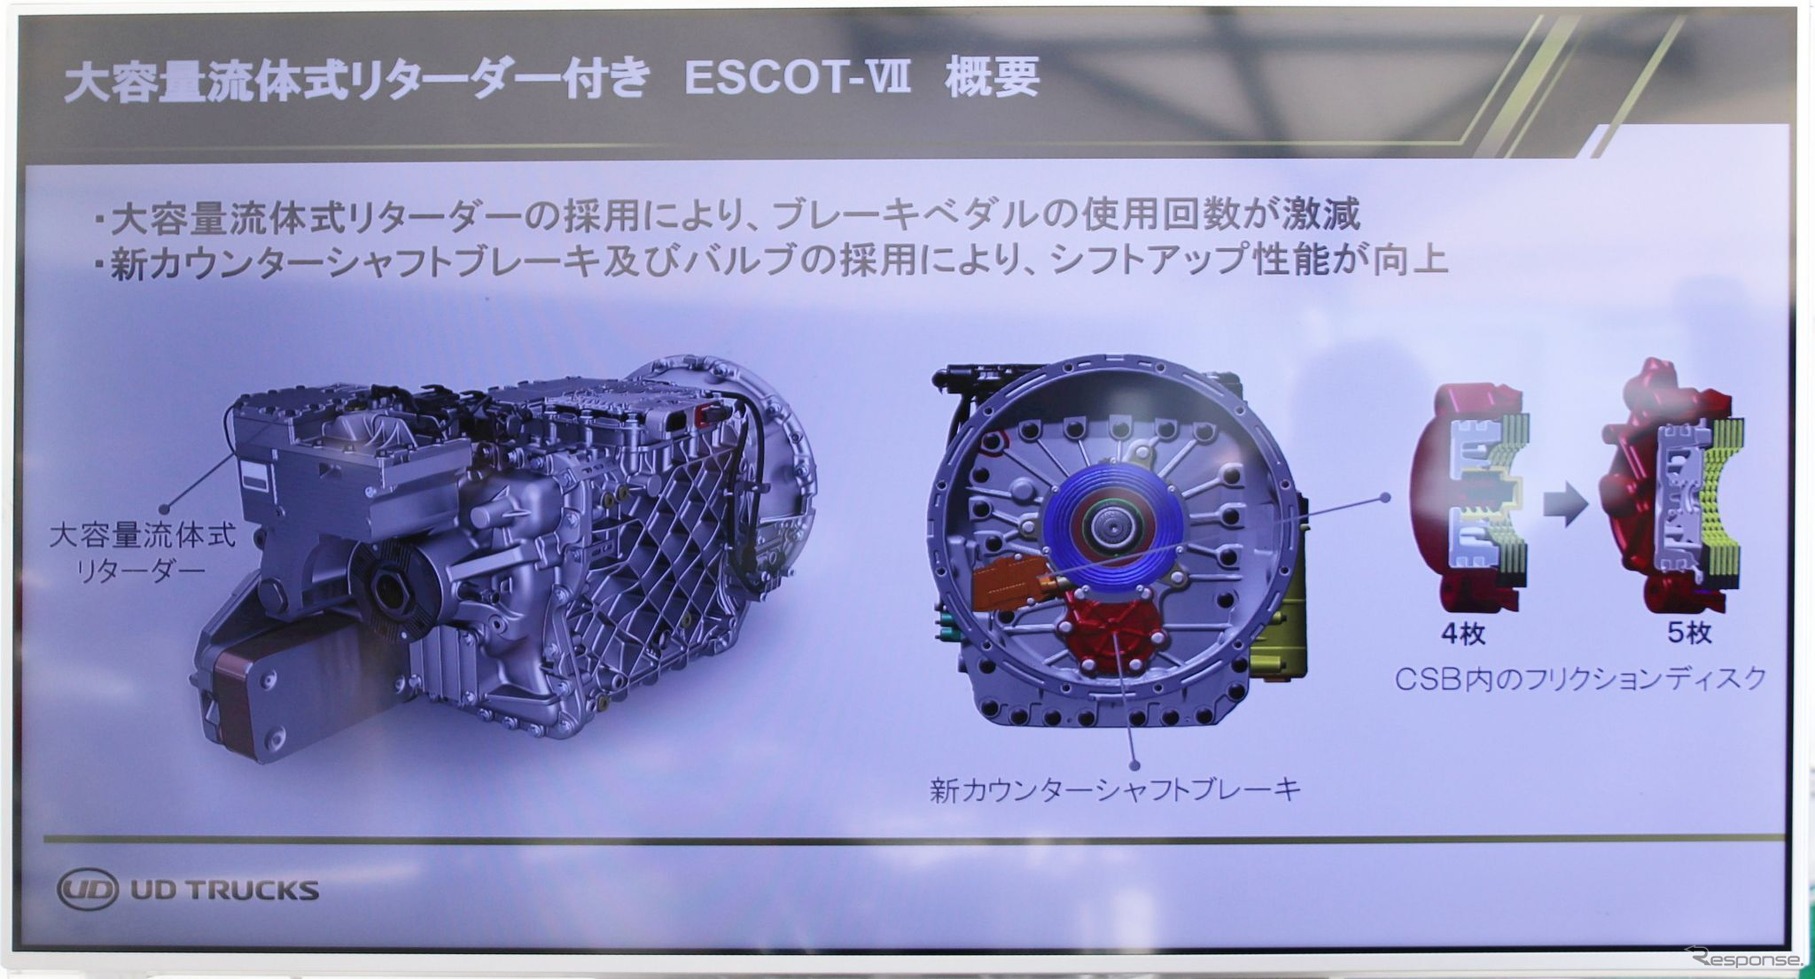 流体式リターダーがカウンターシャフト直近に取り付けられたESCOT-VII。応答速度が向上している